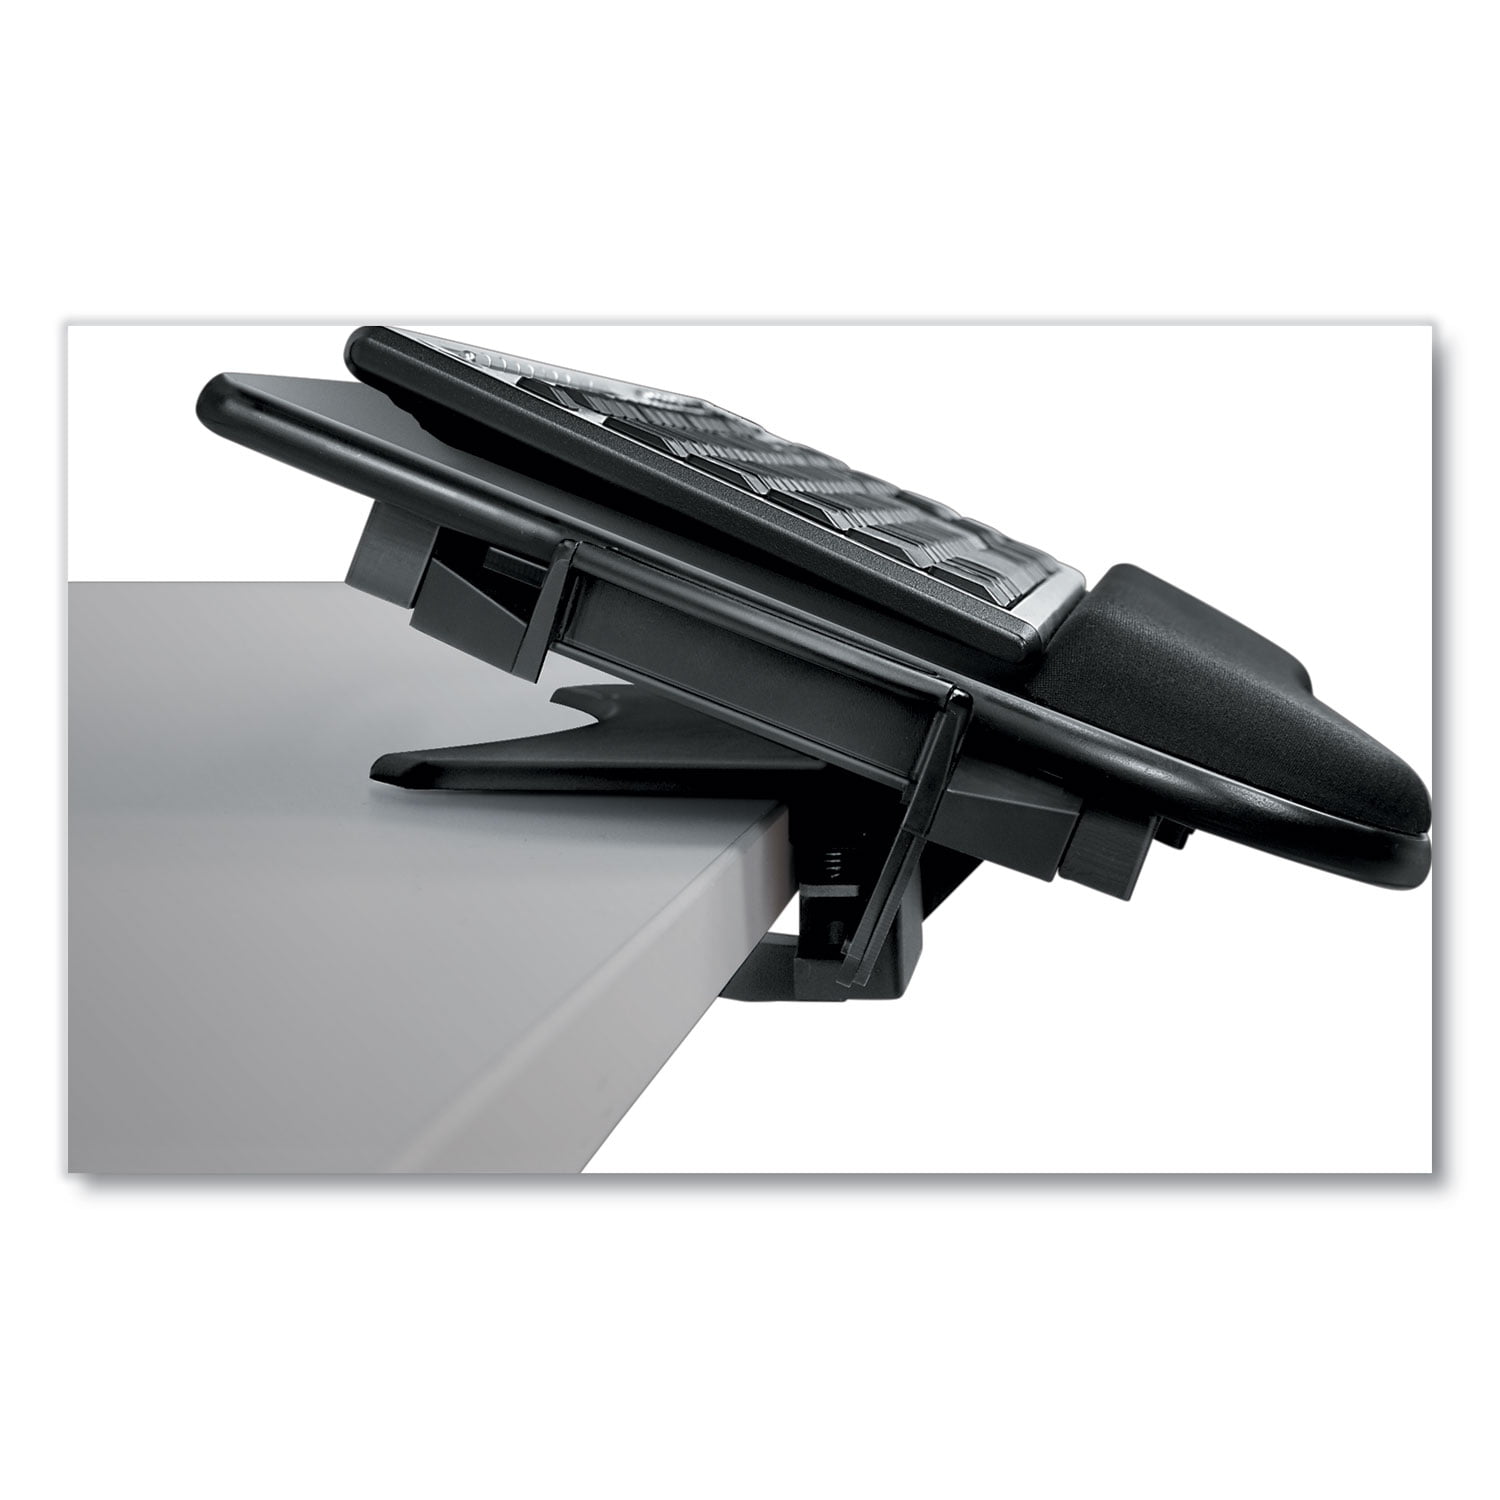 Black Fellowes Tilt N' Slide Pro Keyboard Manager 4.0" x 29.3" x 11.5" 